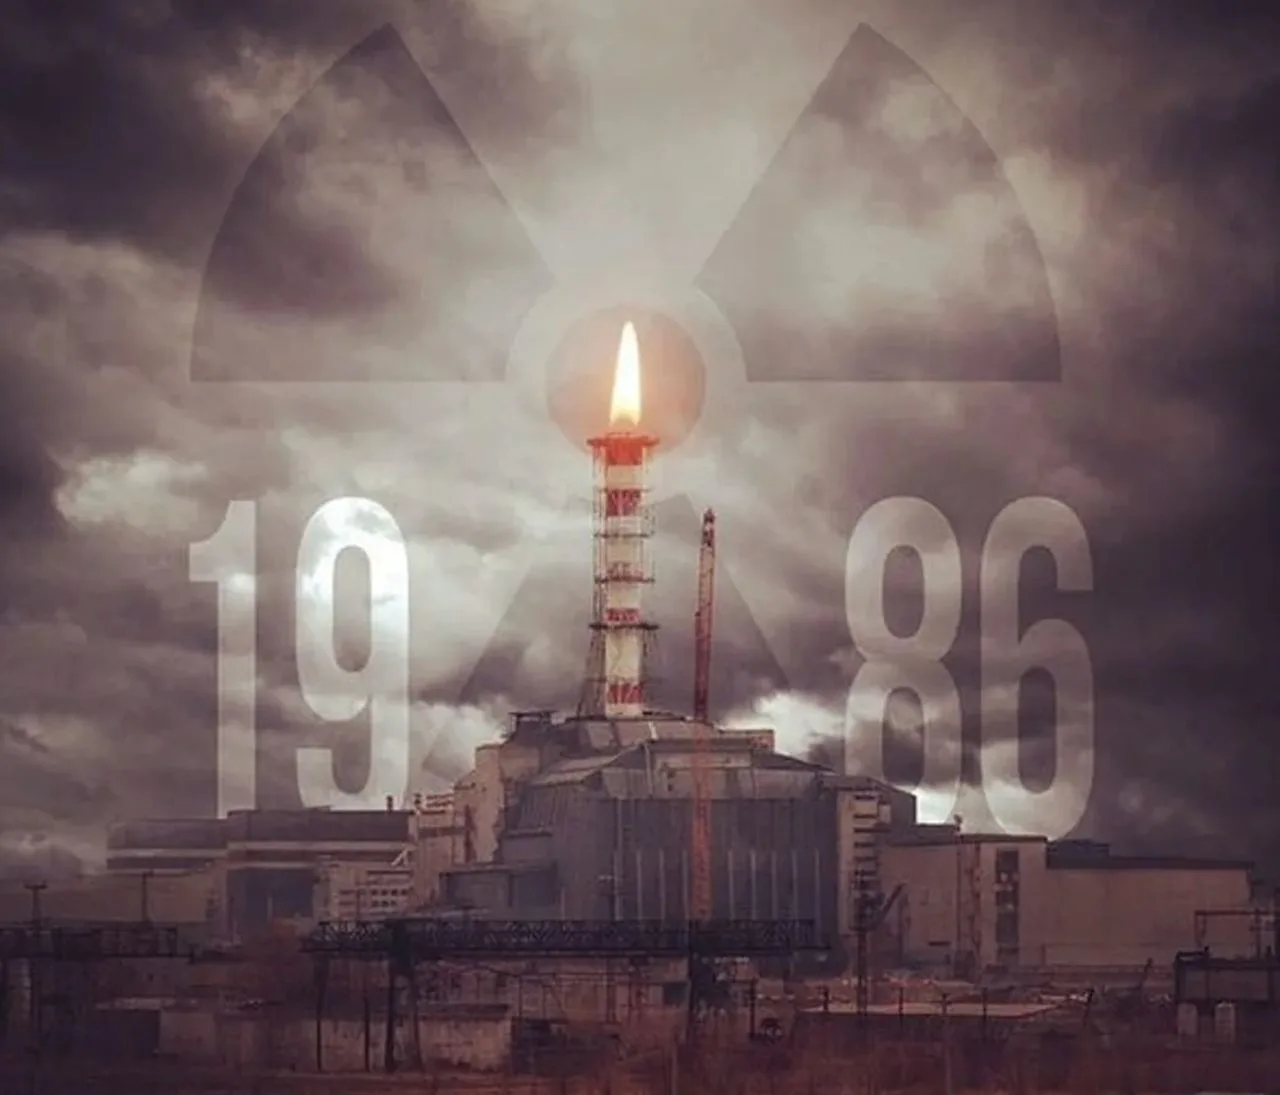 Чернобыльская АЭС 1986 26 апреля. Чернобыль взрыв атомной станции 1986. Четвертый энергоблок Чернобыльской АЭС катастрофа 26 апреля 1986. Взрыв 4 энергоблока ЧАЭС.